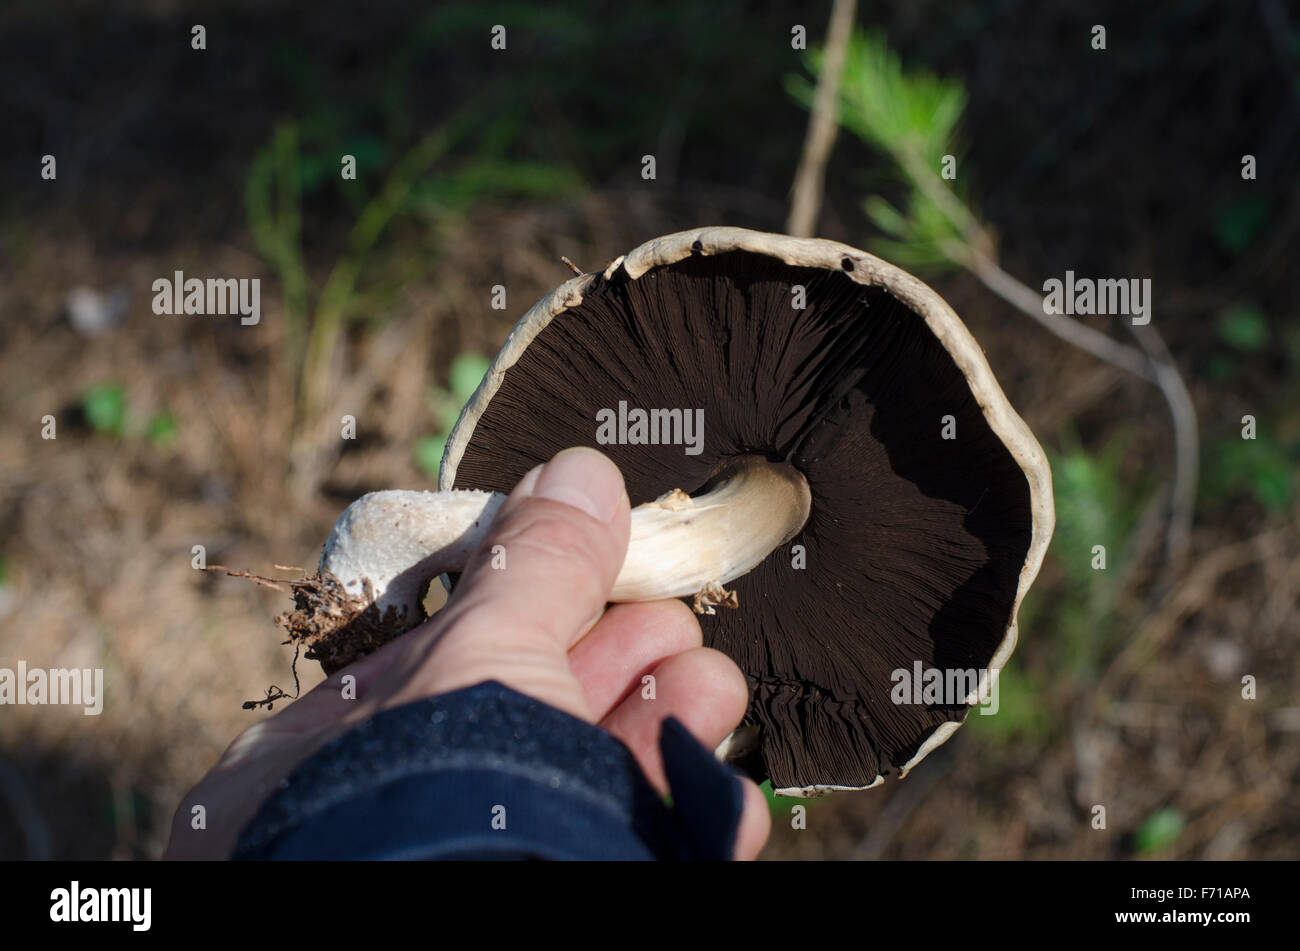 Cueillette à la main, de champignons sauvages d'Agaricus campestris dans une forêt de pins, Espagne Banque D'Images